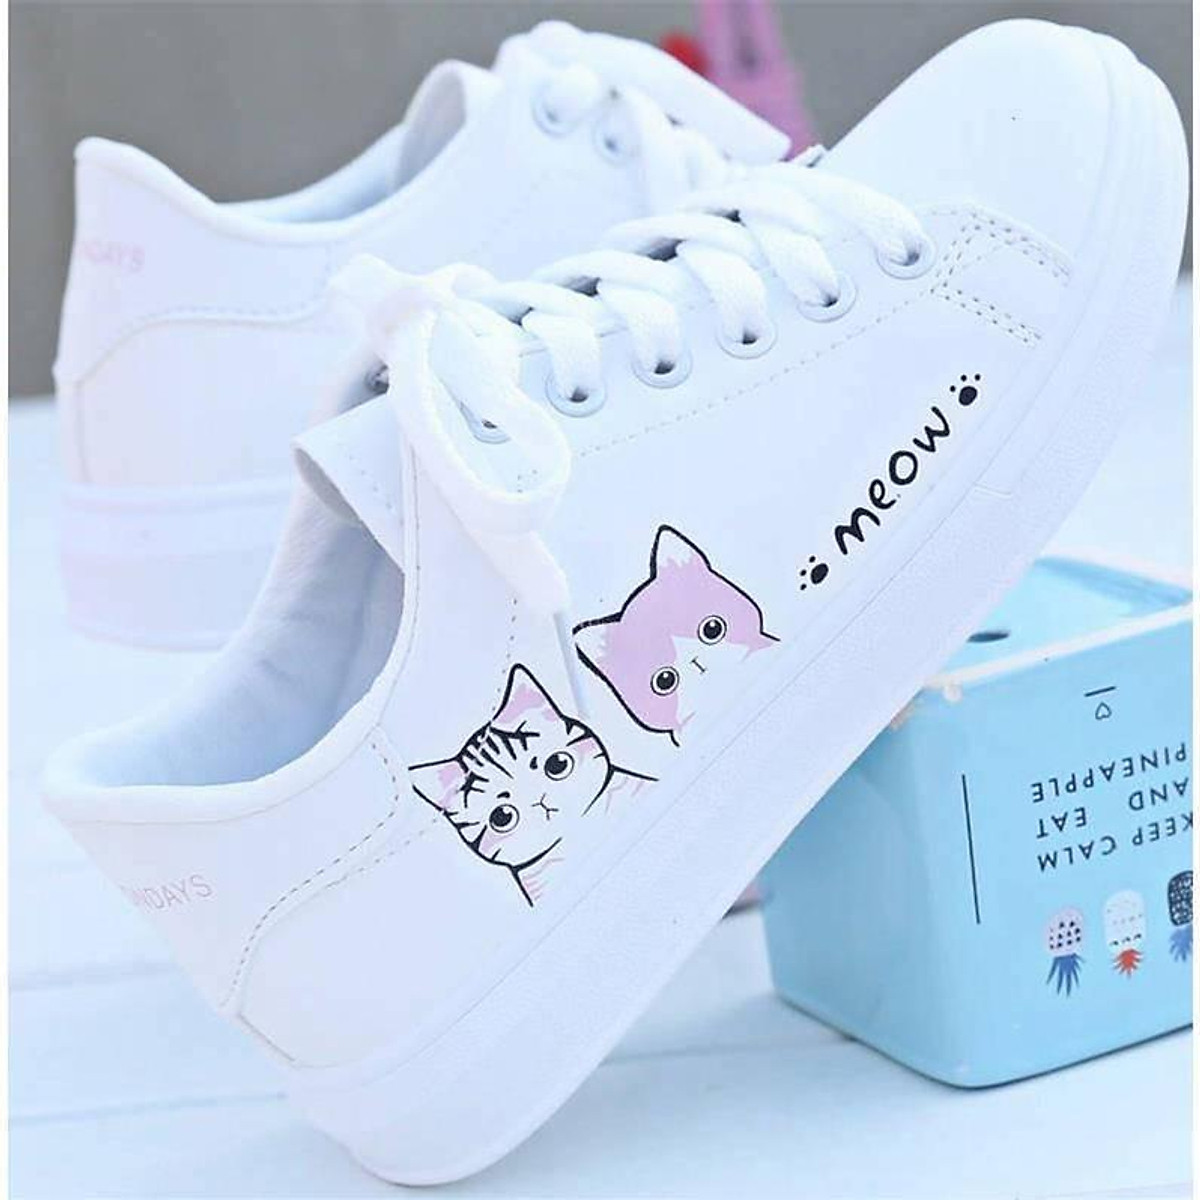 Giày bata đế bằng thiết kế meow cho nữ dáng thể thao